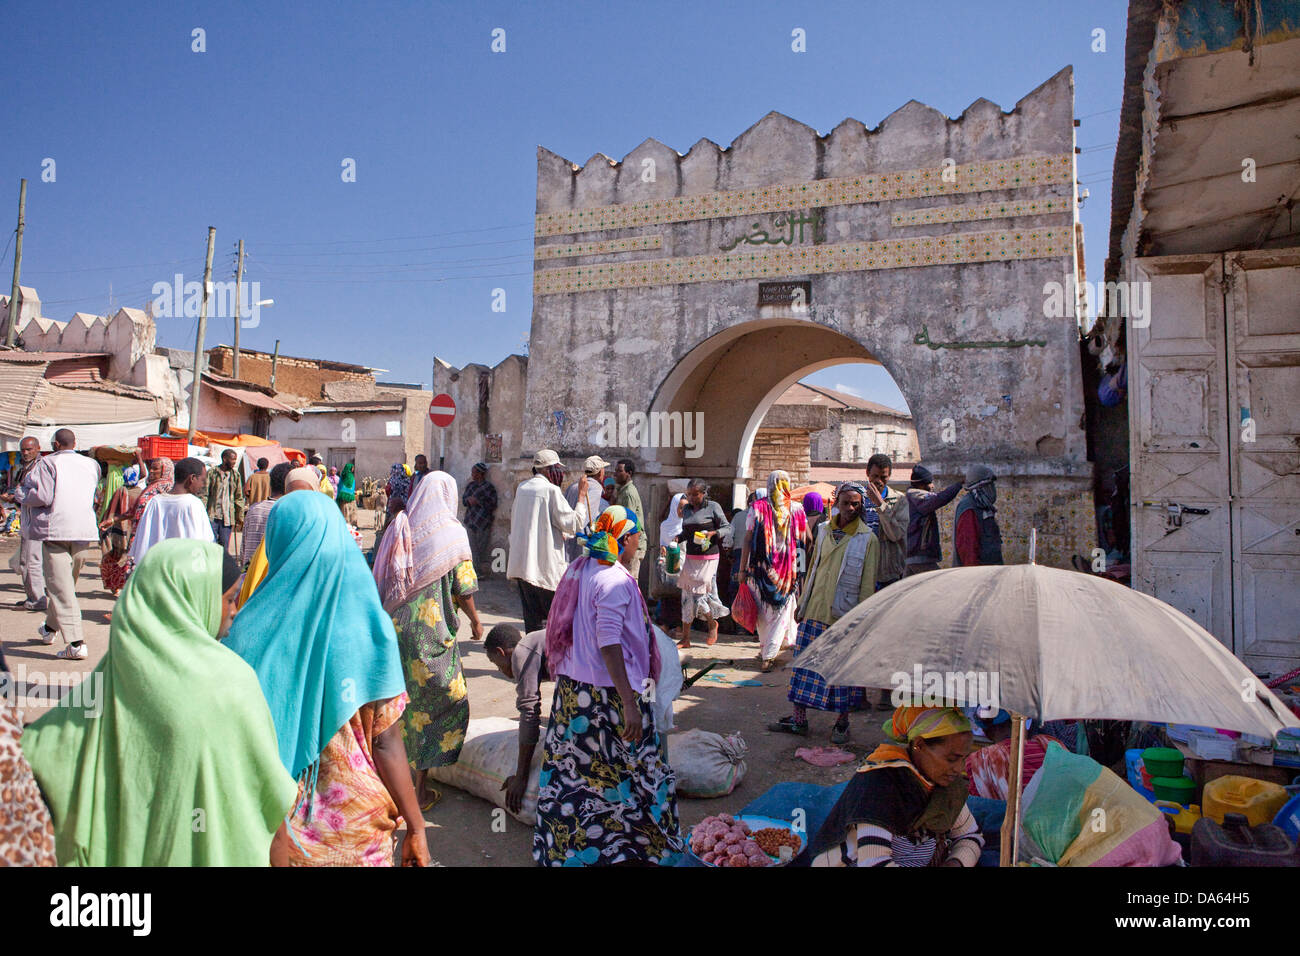 Stadt-Tor, Harar, Äthiopien, UNESCO Welt Kulturerbe, Afrika, Stadt, Stadt, Tor Stockfoto